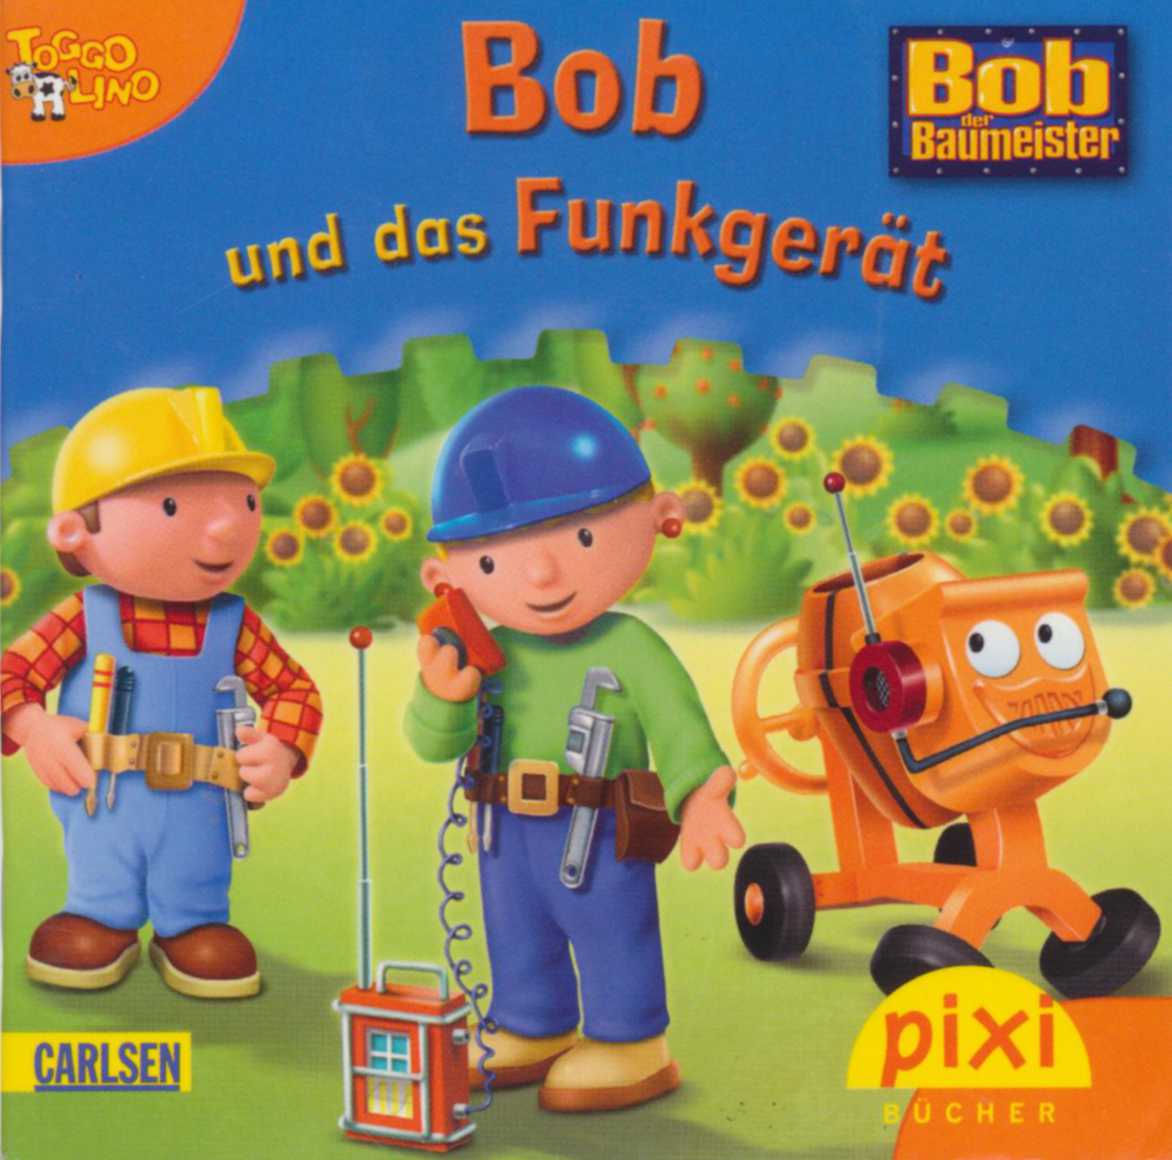 Bob der Baumeister: die Serie für Kleinkinder